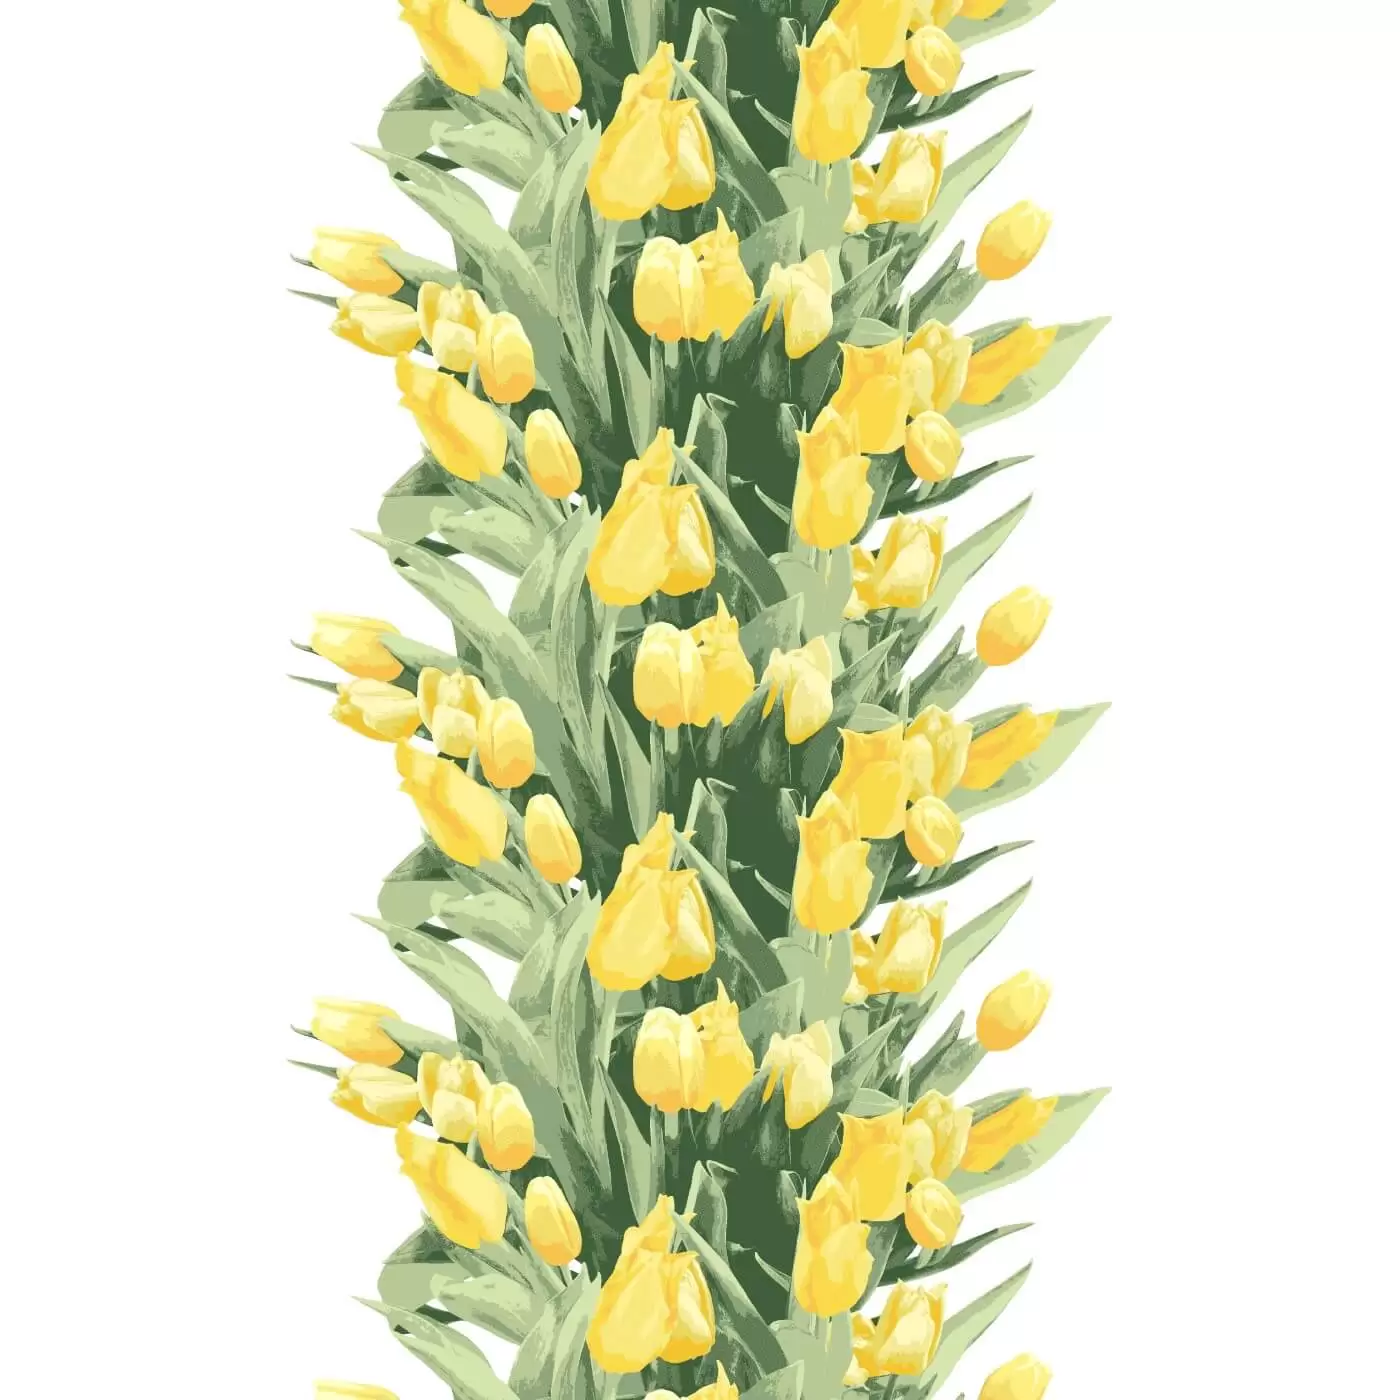 Zasłony w tulipany Pauliina. Wzór zasłony z tulipanami w żółte kwiaty i zielone liście na białym tle